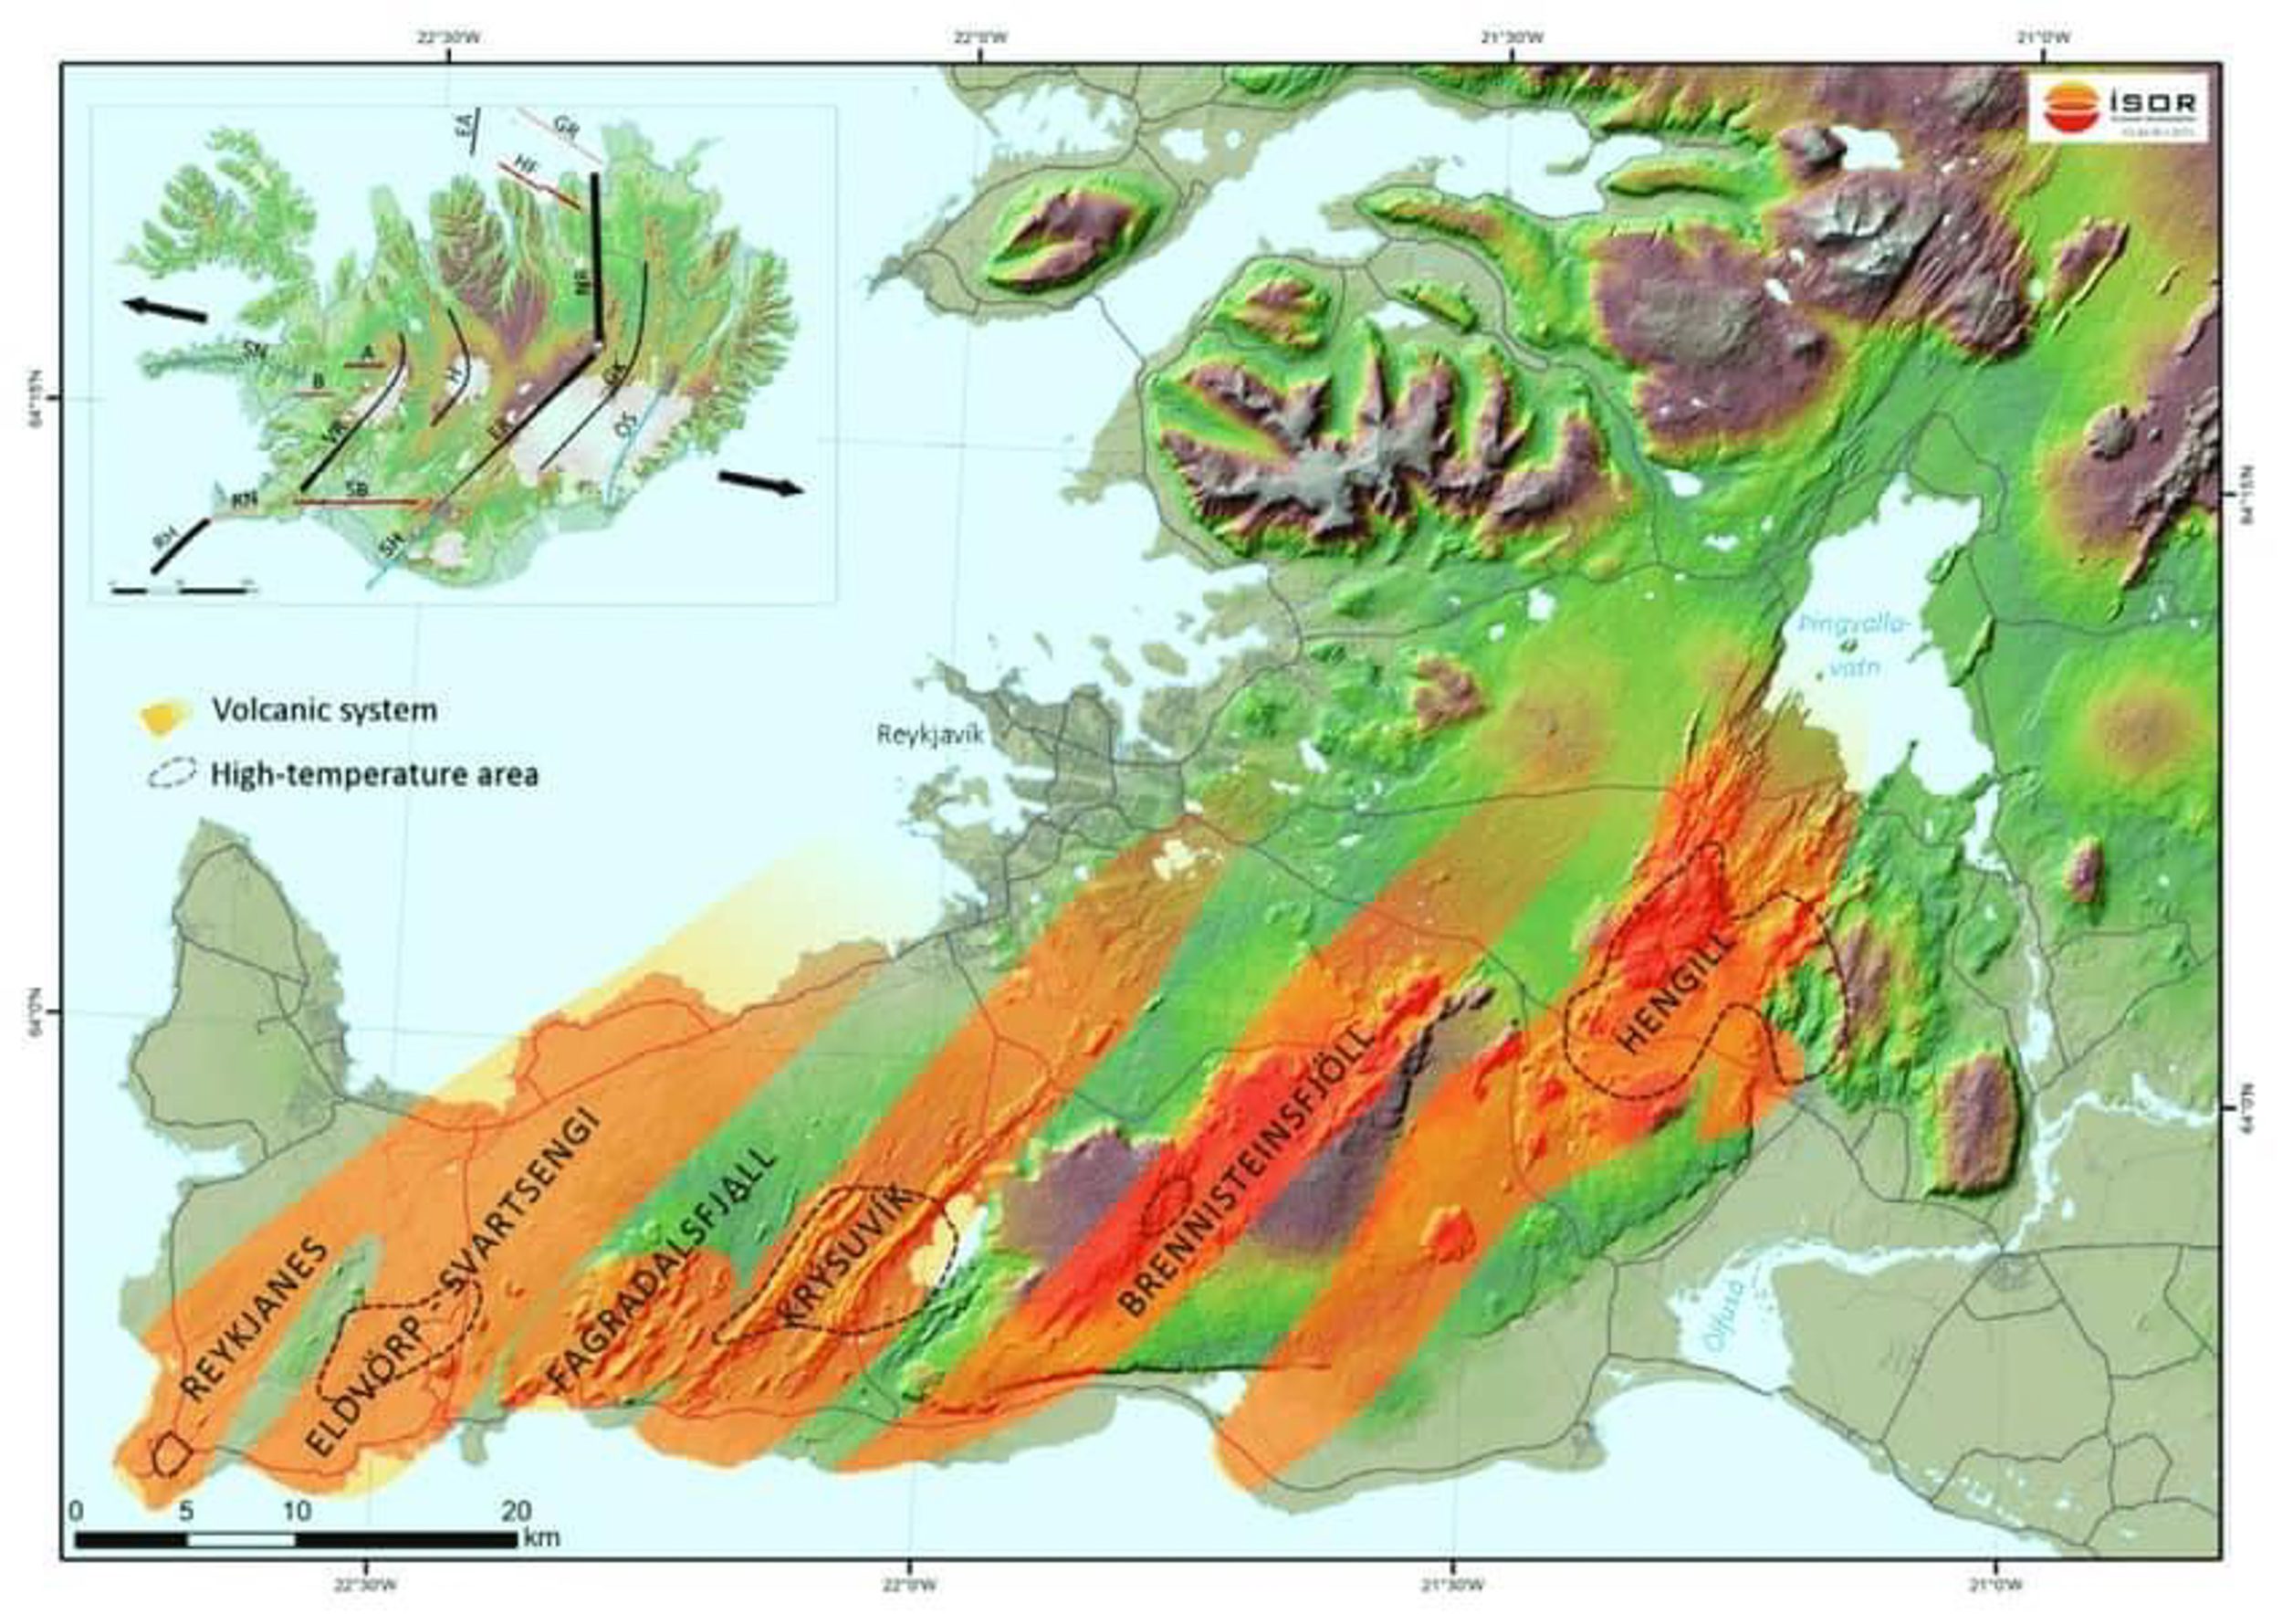 Les systèmes volcaniques de la péninsule de Reykjanes.